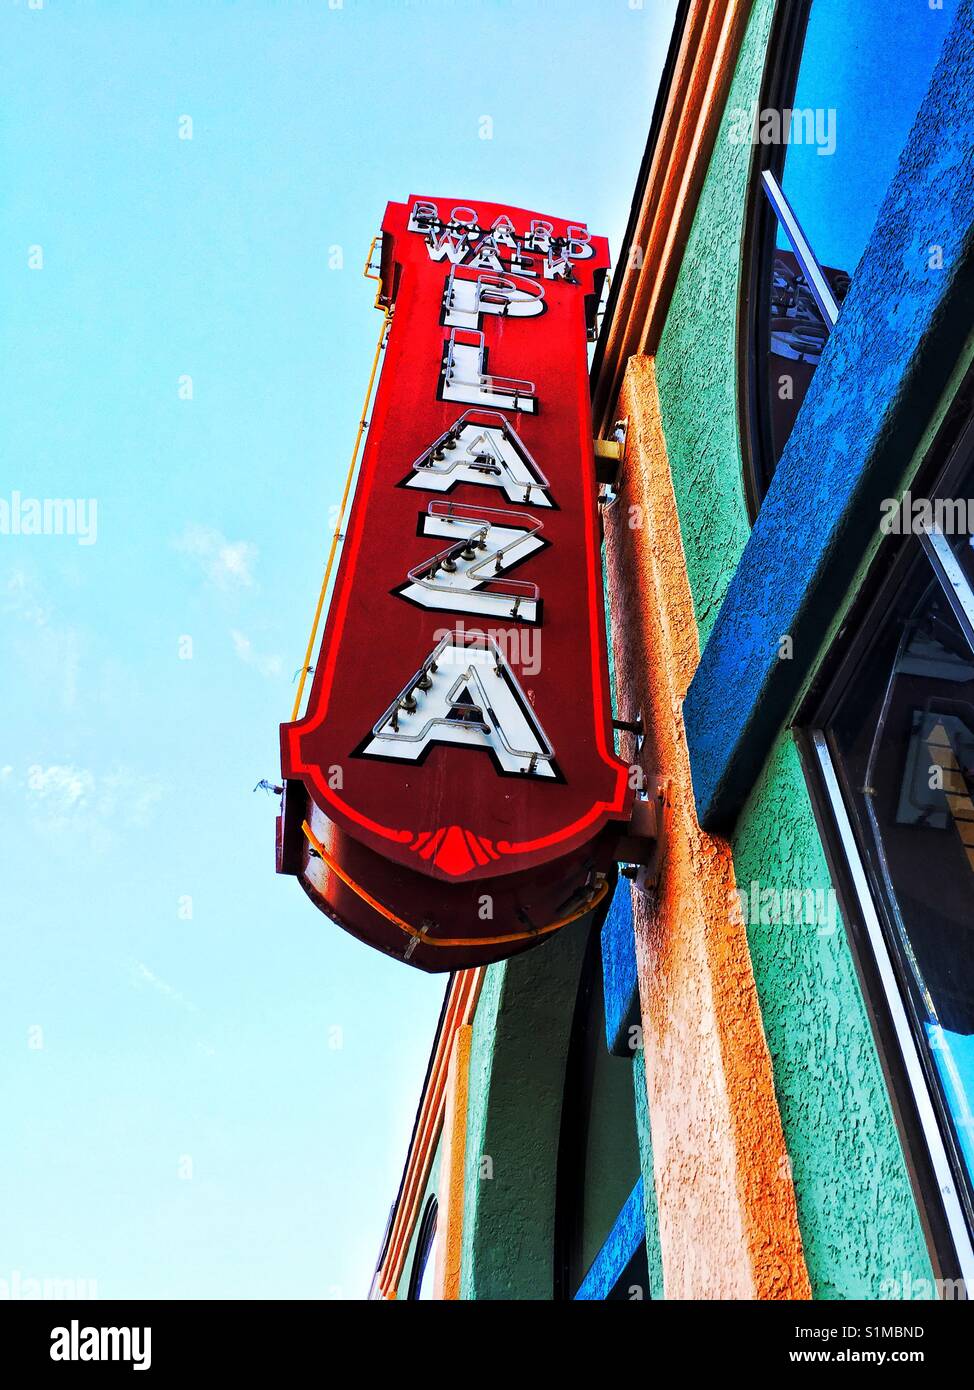 Suchen Sie in 'Board Walk Plaza" Leuchtreklame. Weiße Buchstaben auf rote Metall, Led, Neon Sign auf bunten Gebäude. Pismo, Kalifornien Stockfoto